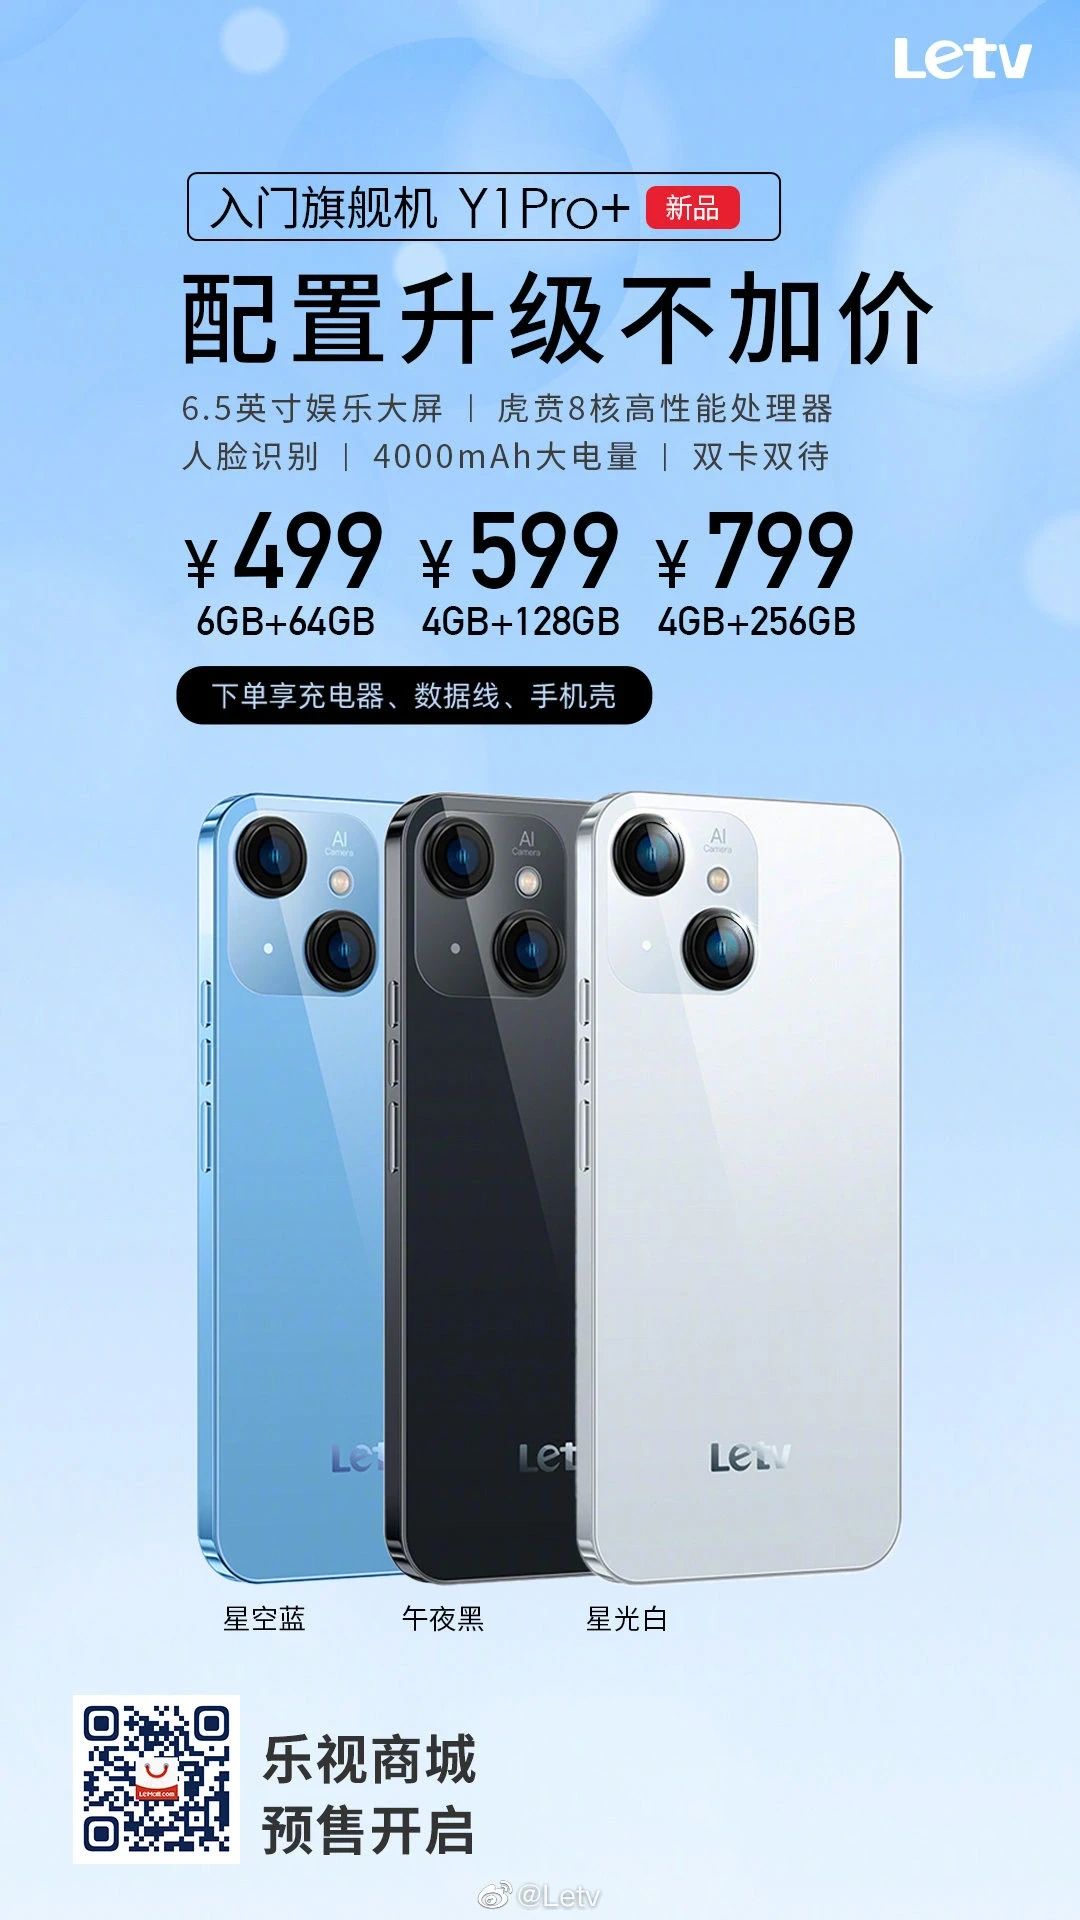 LeEco представила дешёвую копию iPhone Y1 Pro+ за 4300 рублей ()